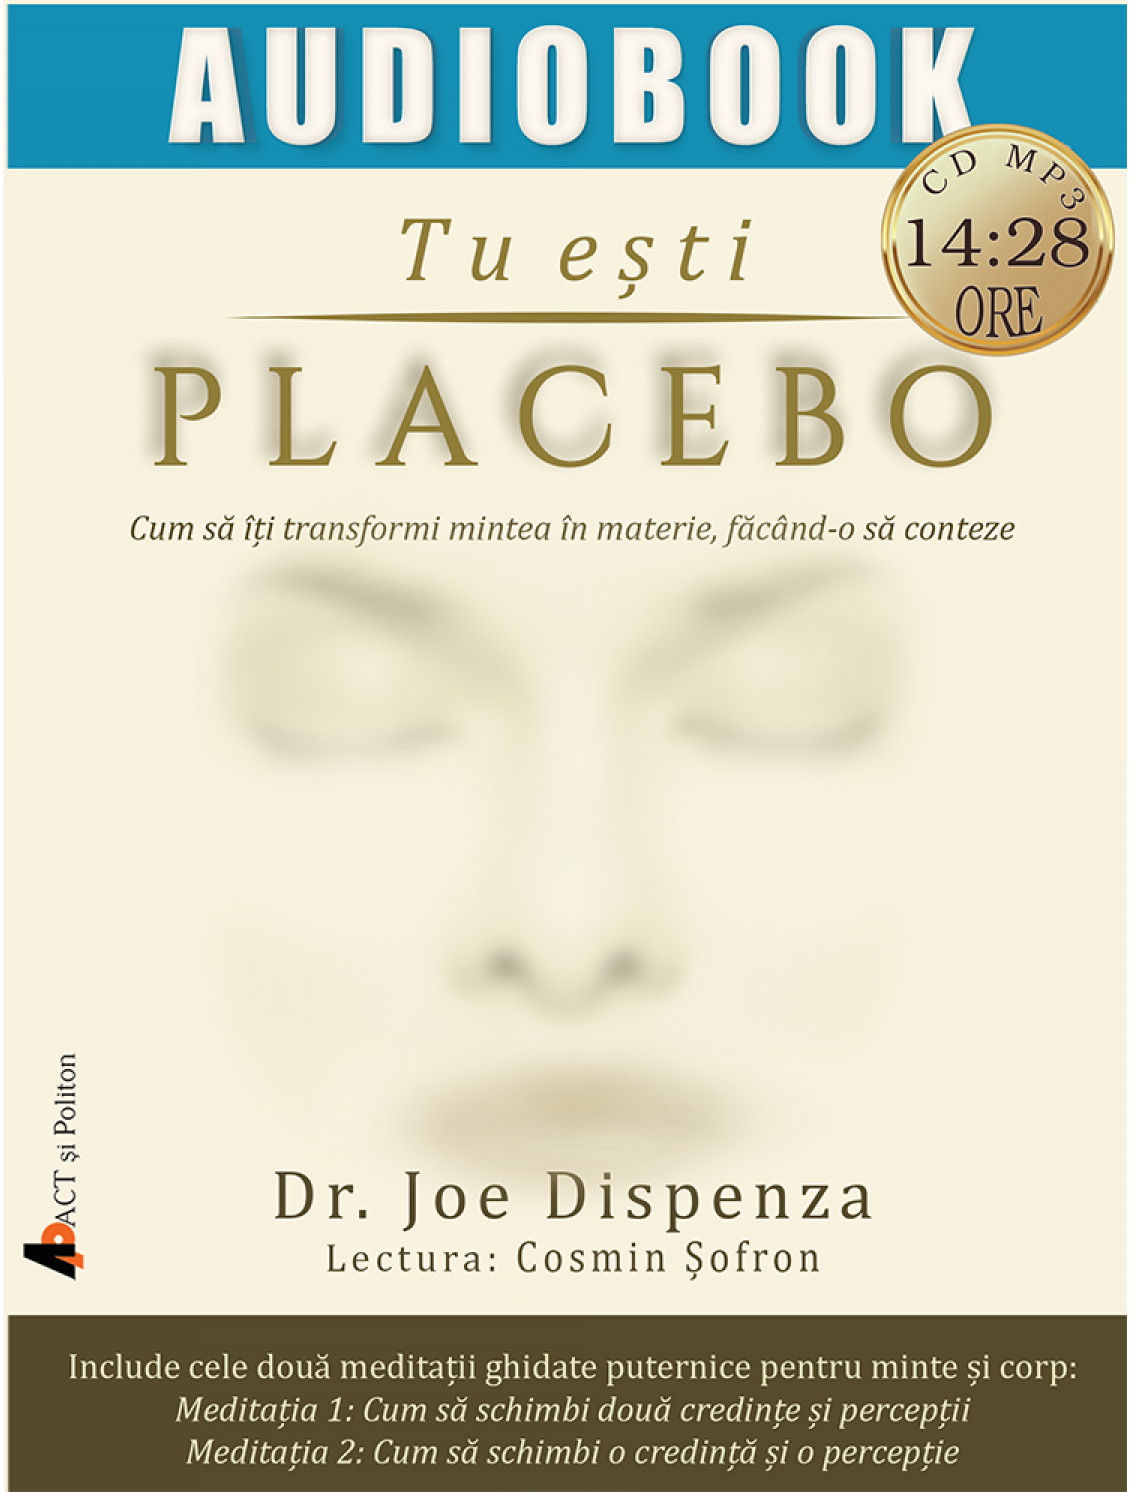 Tu esti placebo | Joe Dispenza carturesti.ro poza bestsellers.ro